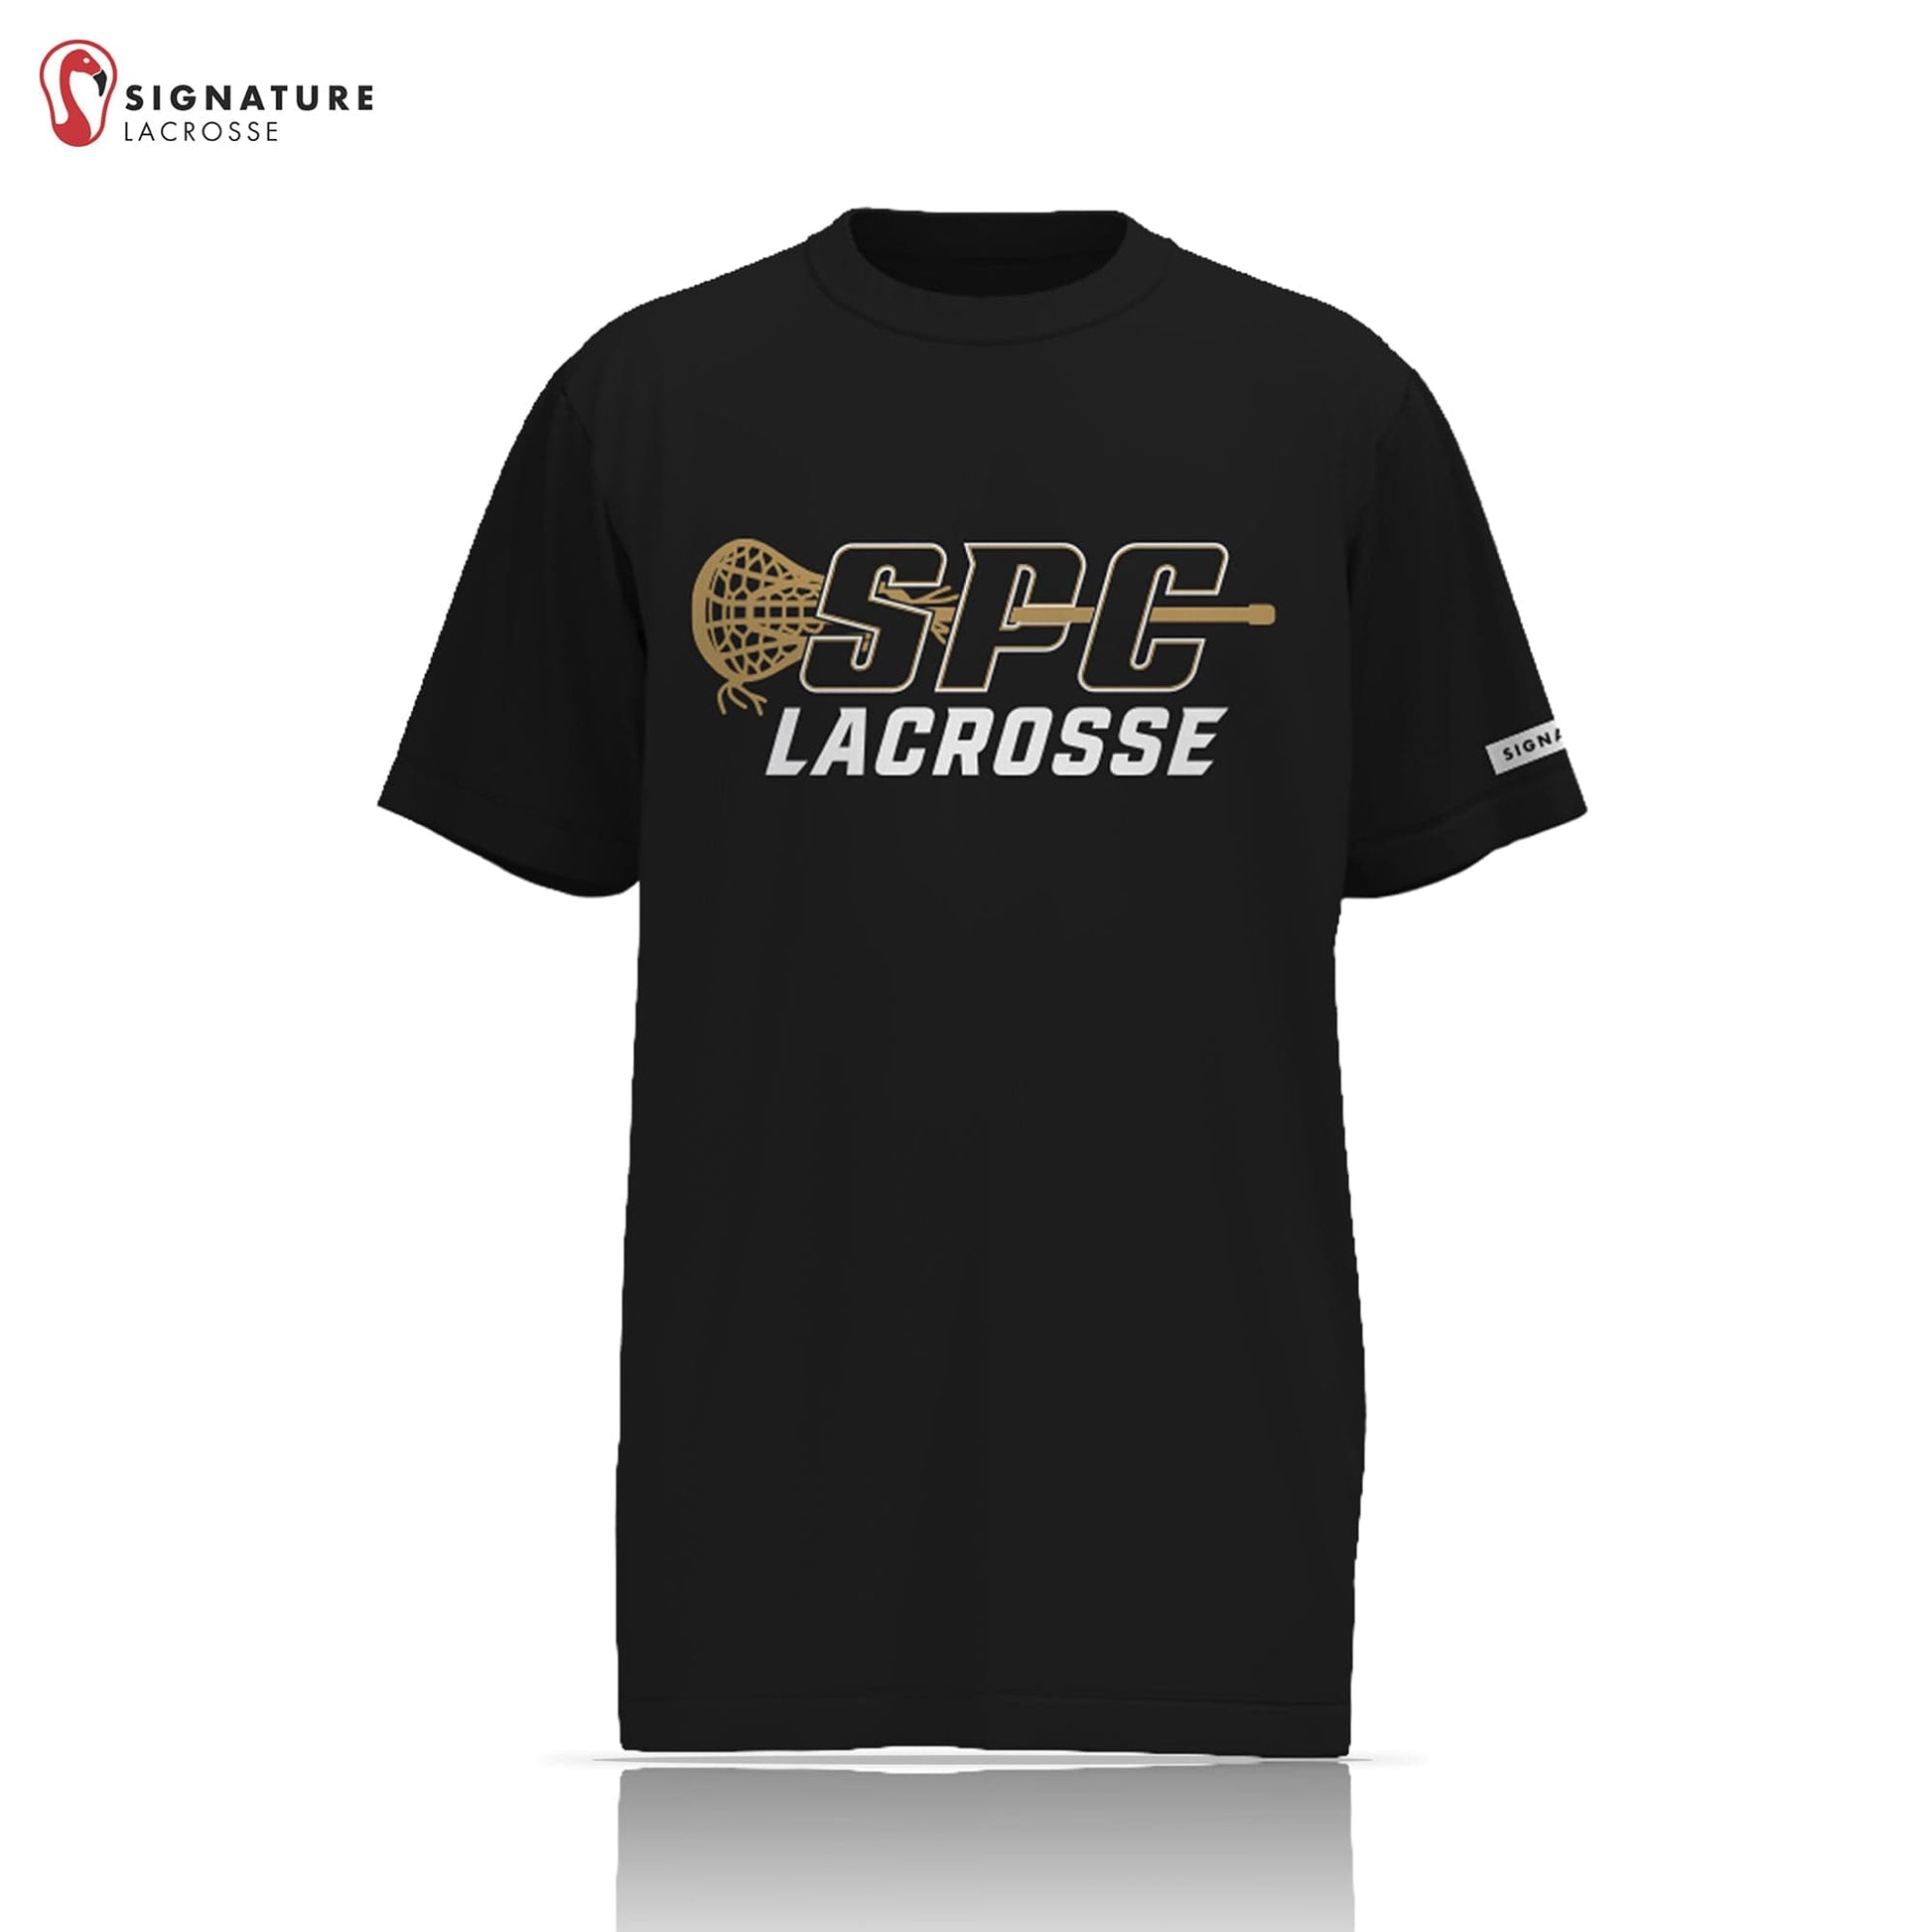 St Pete Catholic Lacrosse Short Sleeve Shooter Shirt Signature Lacrosse